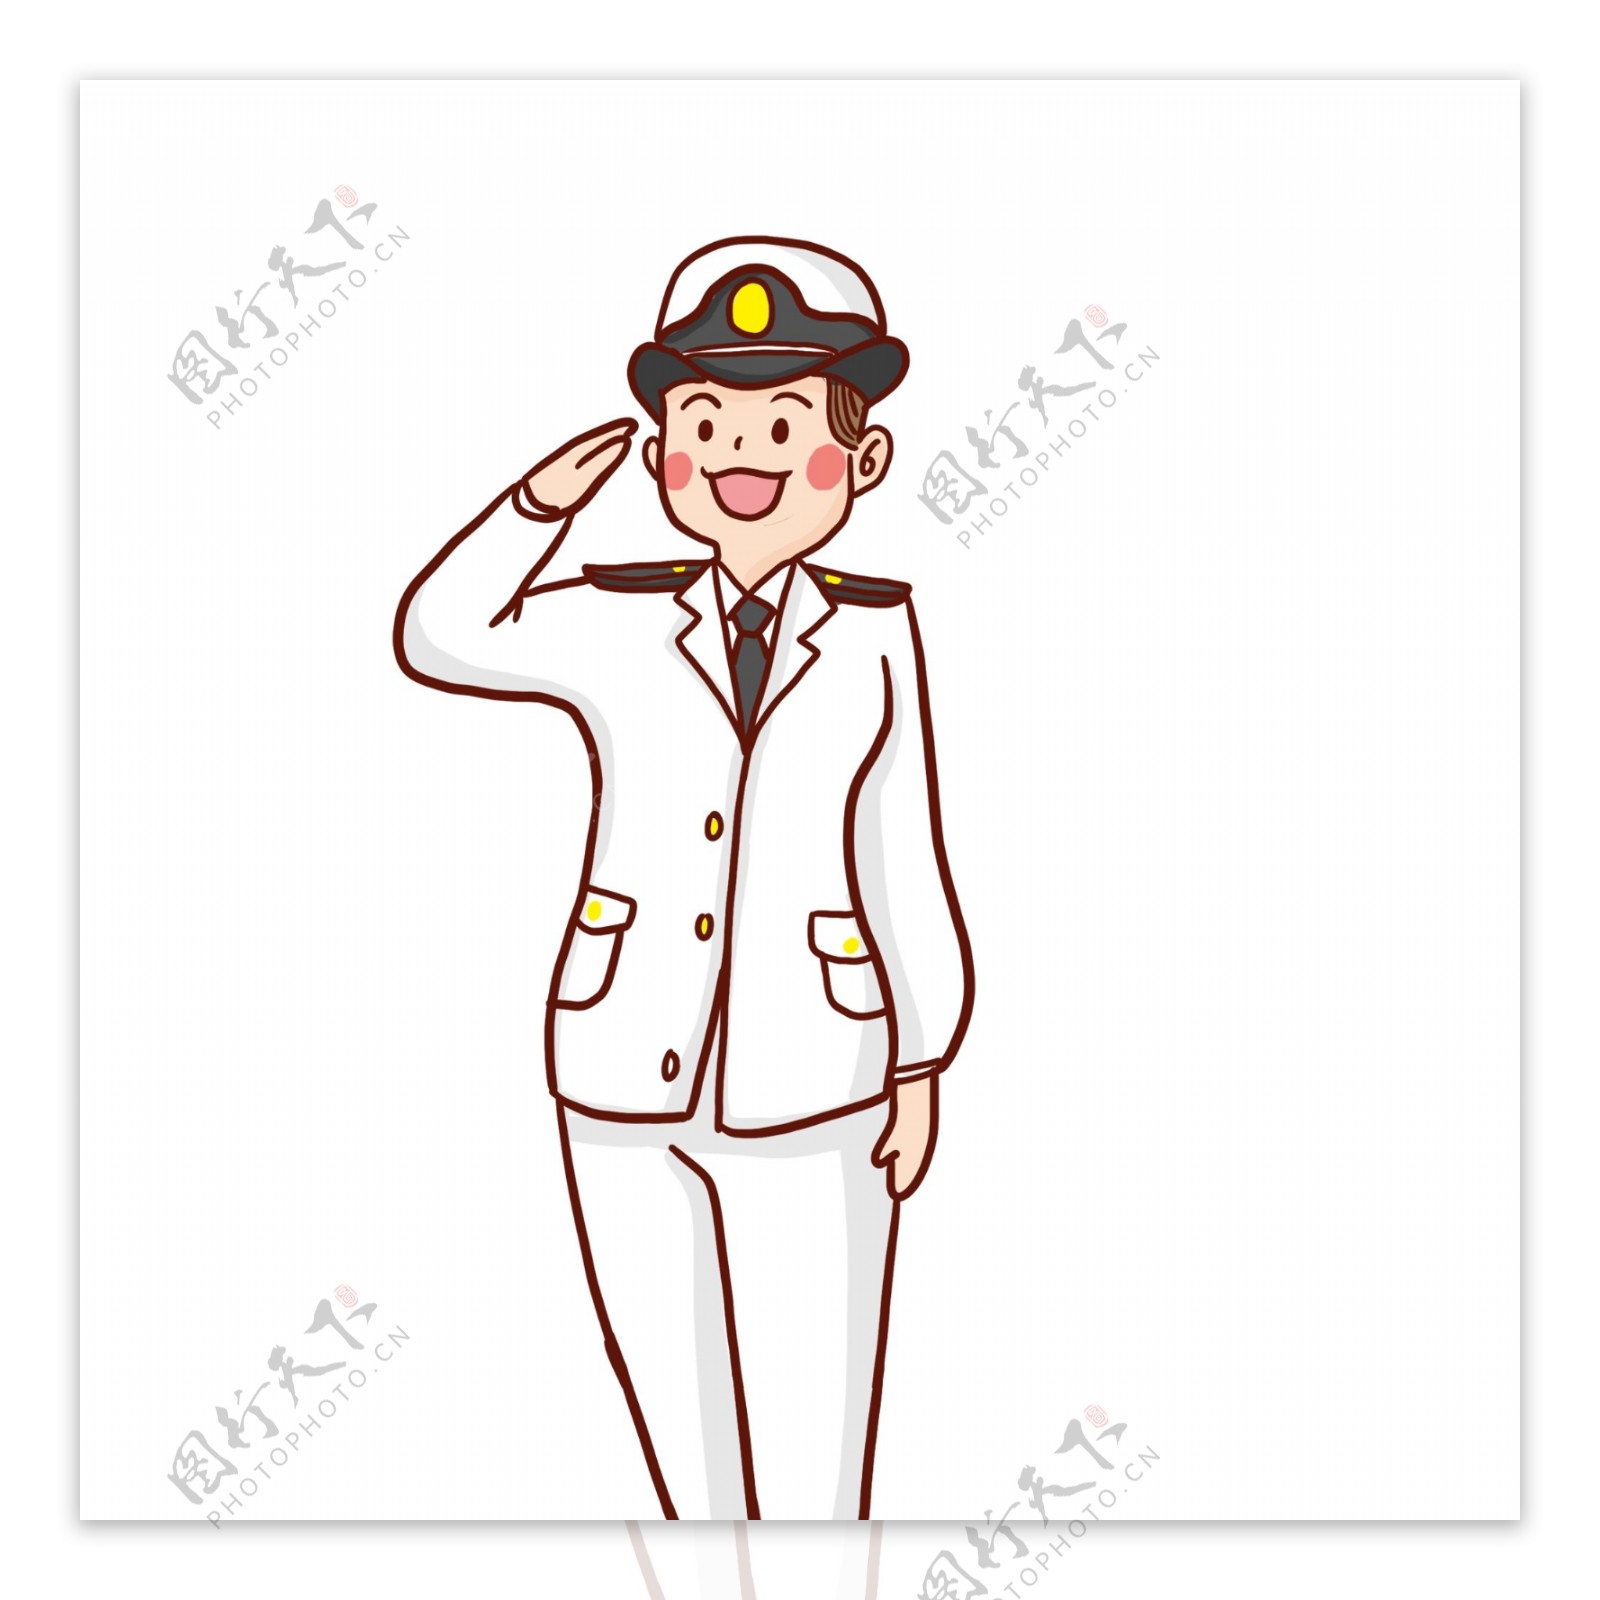 卡通可爱一个敬礼的海军人物设计